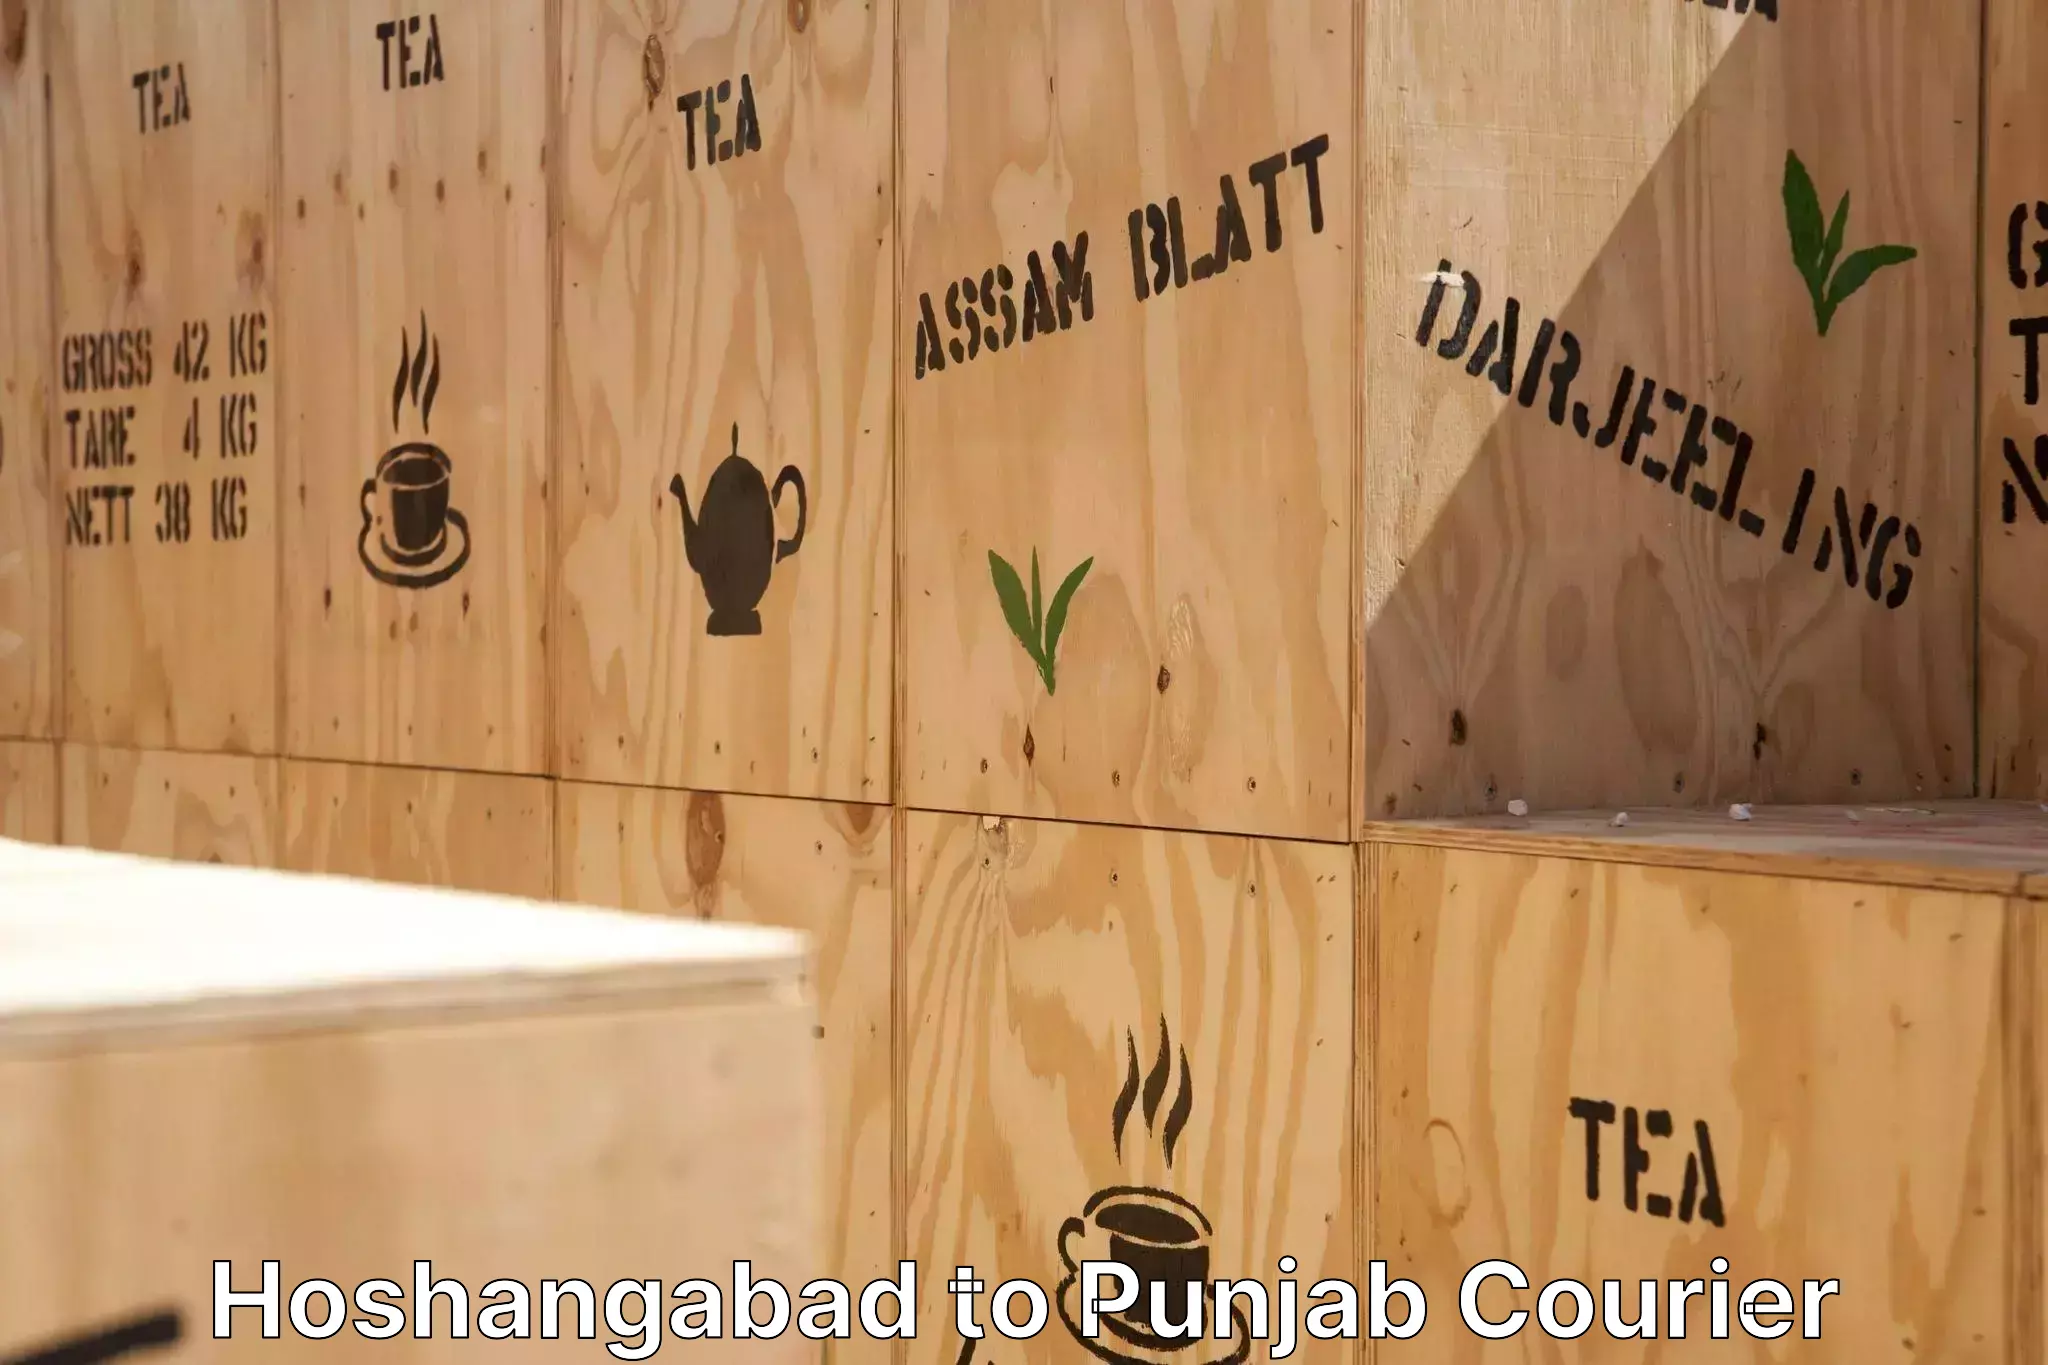 Furniture moving experts Hoshangabad to Dhilwan